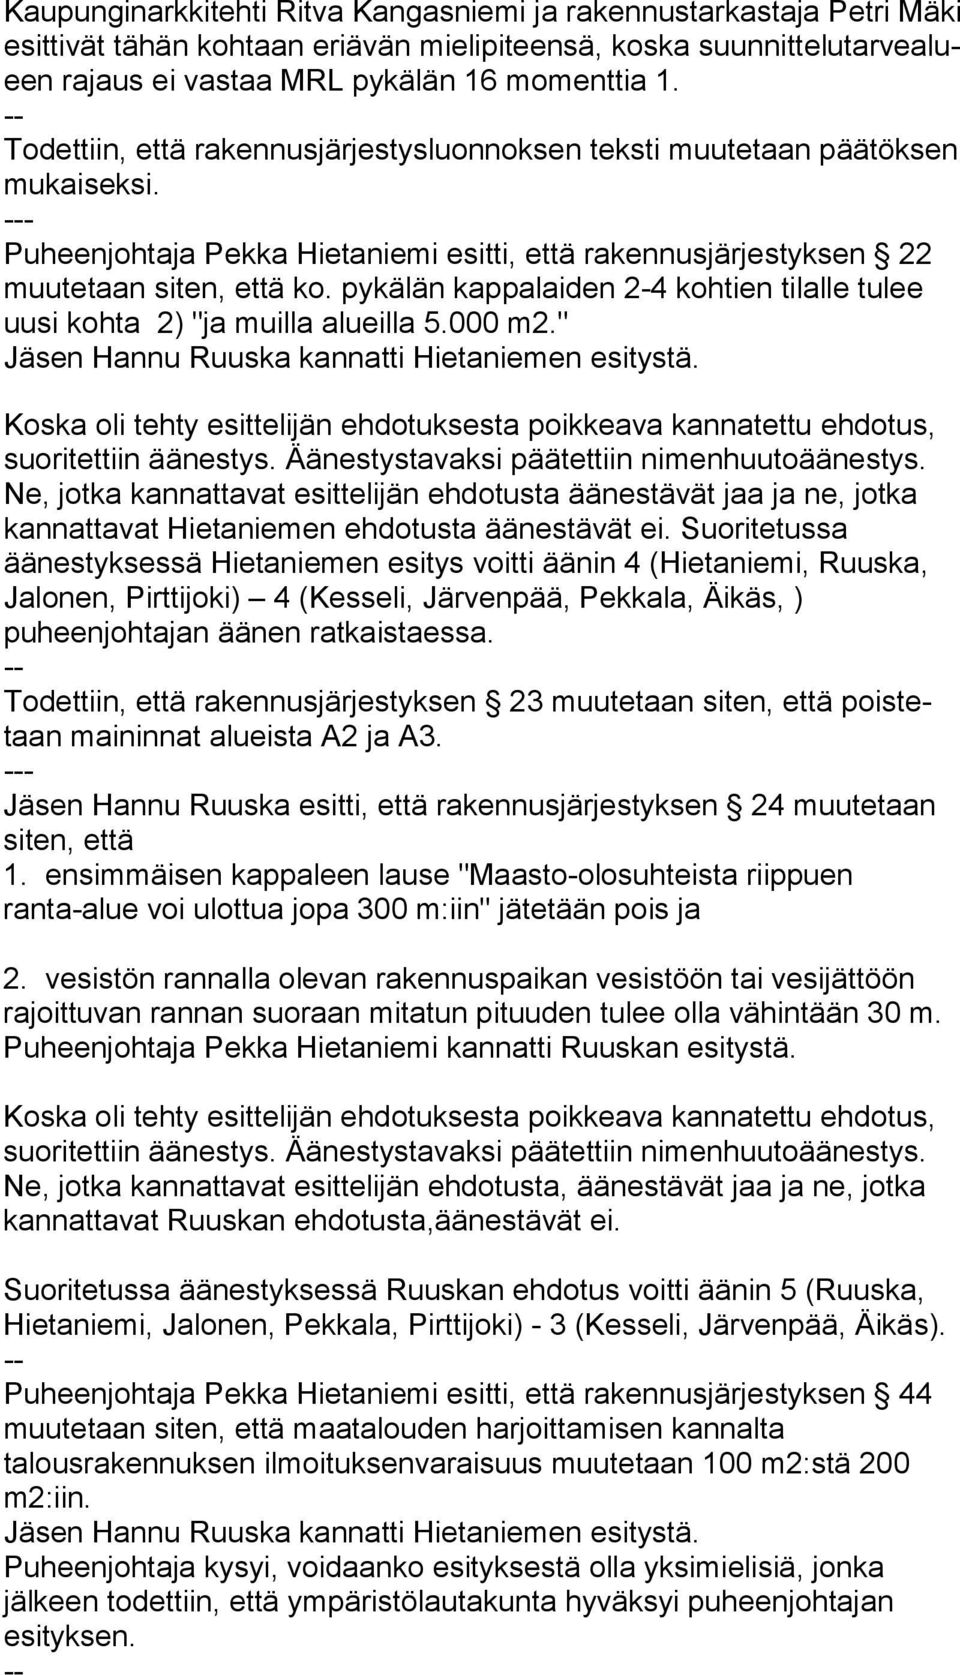 pykälän kappalaiden 2-4 koh tien tilalle tulee uusi kohta 2) "ja muilla alueilla 5.000 m2." Jäsen Hannu Ruuska kannatti Hietaniemen esitystä.